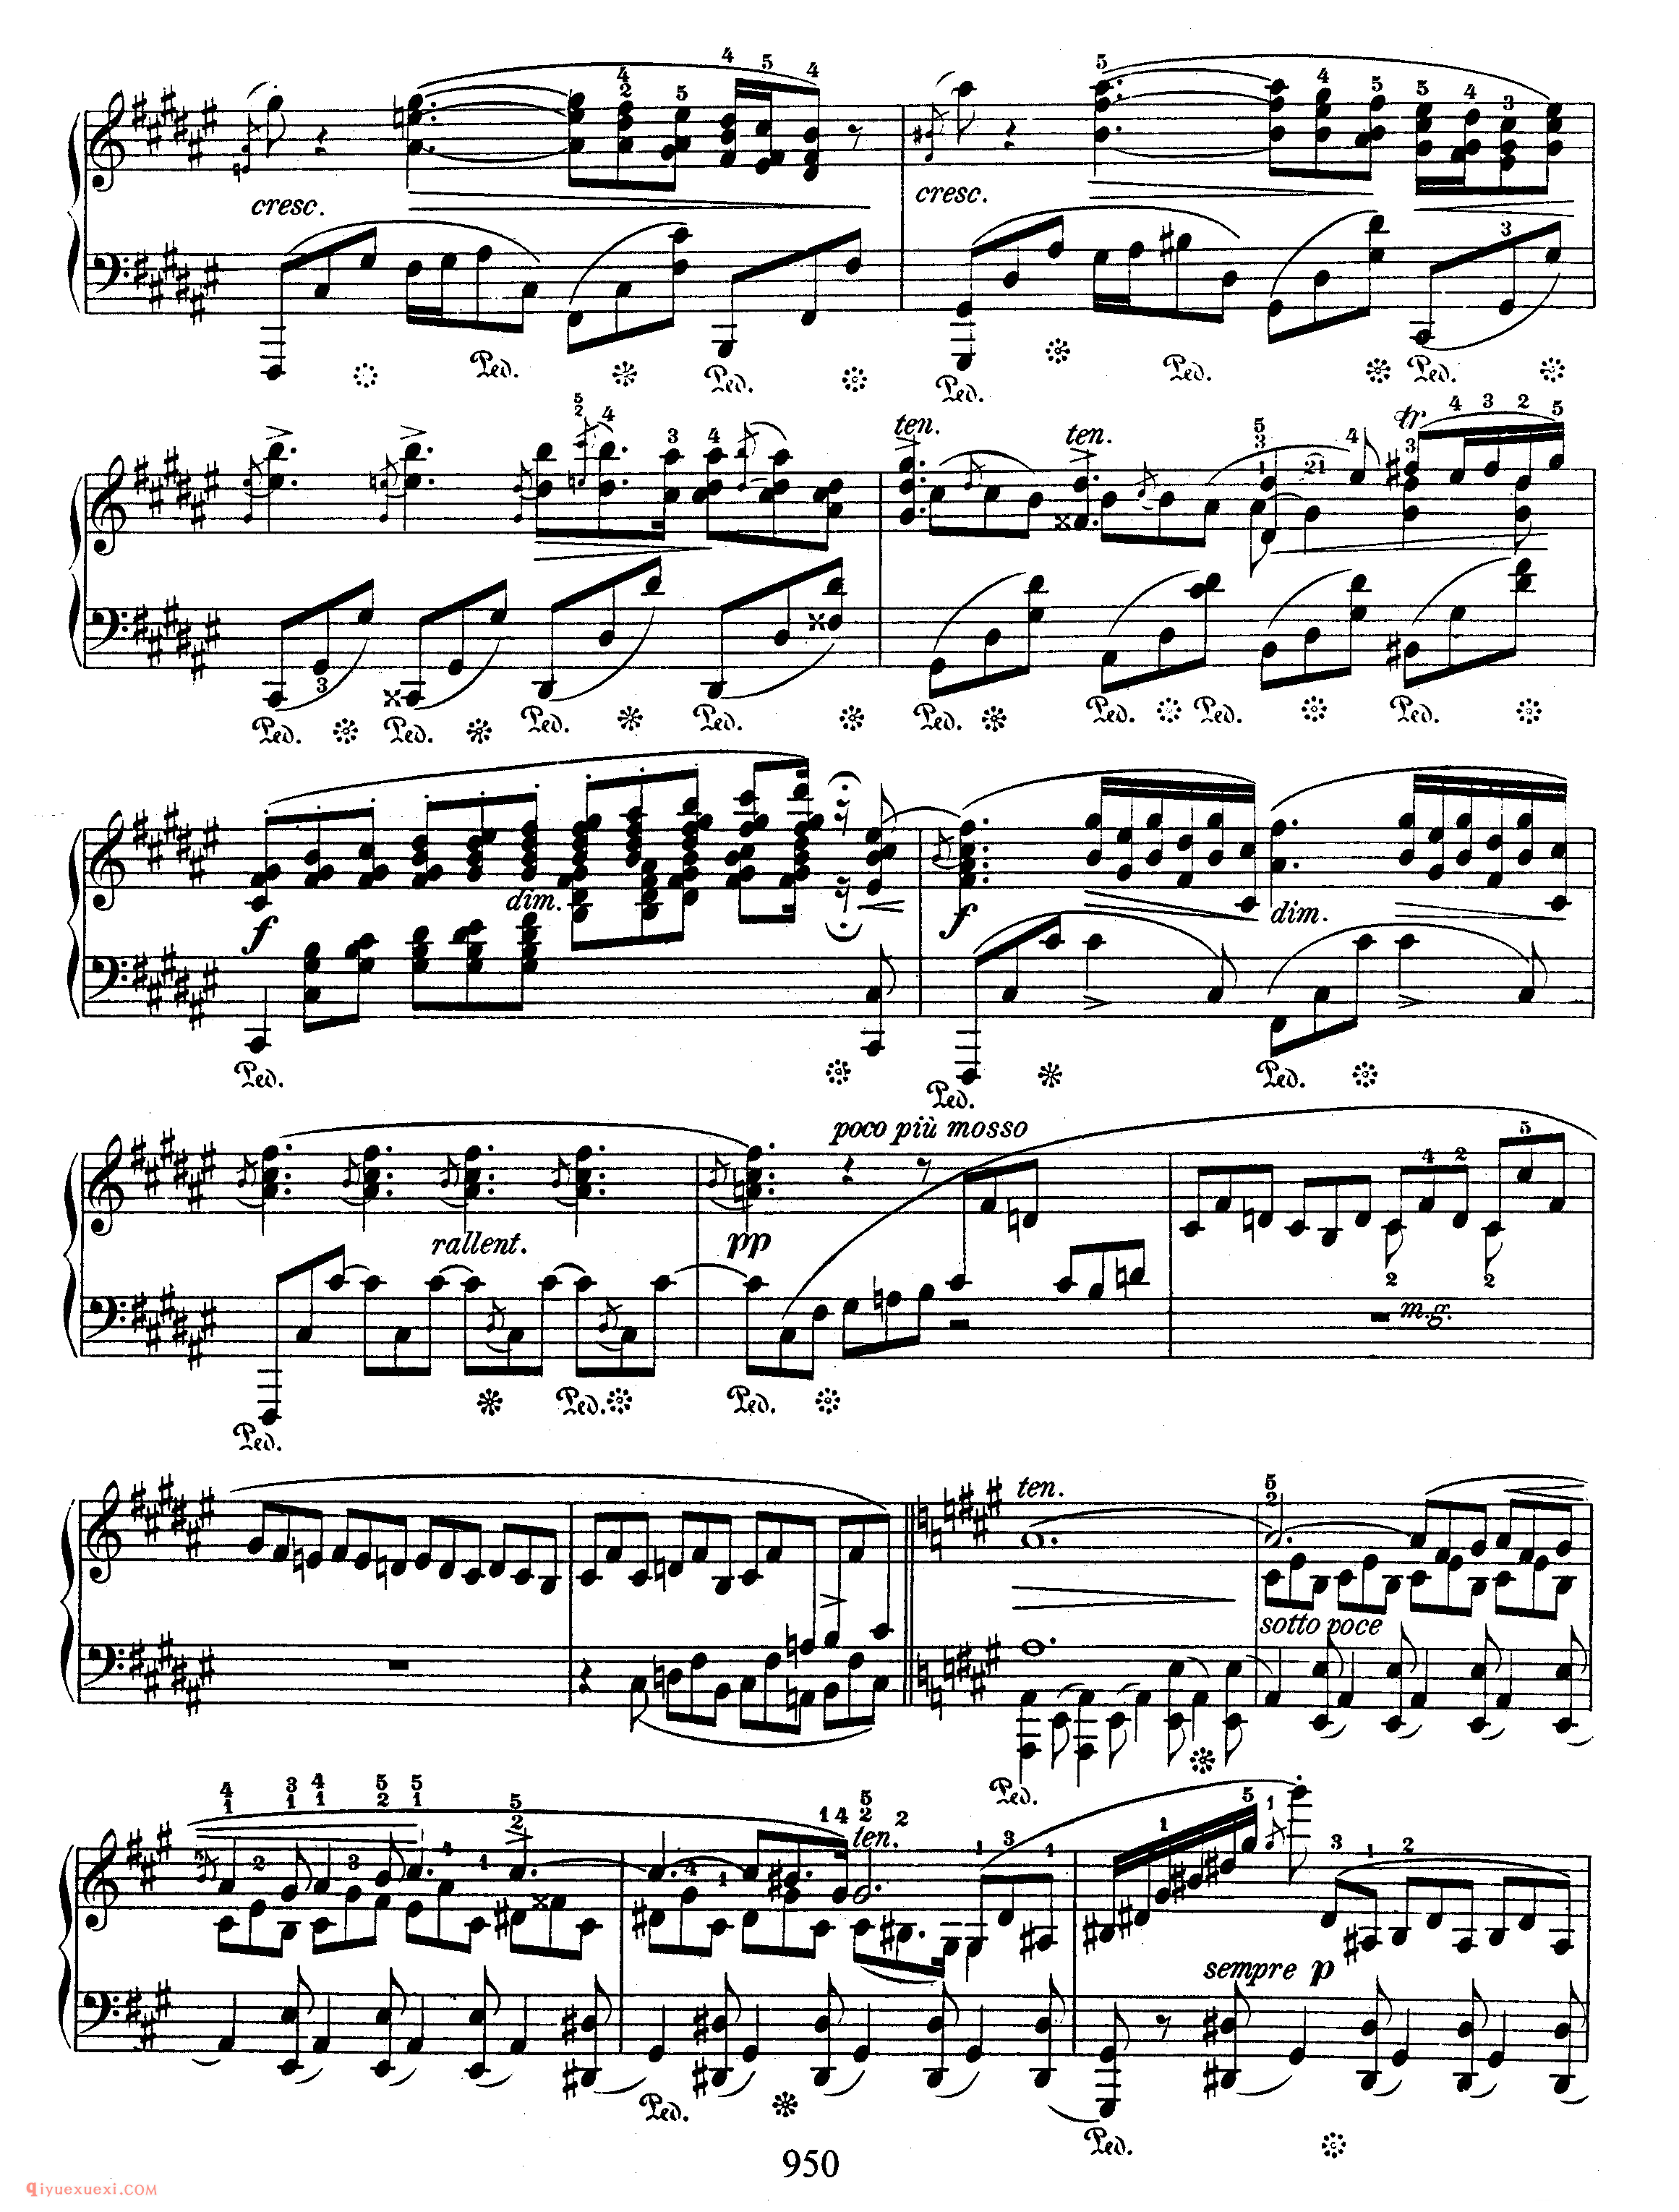 船歌 Op 60_肖邦钢琴谱